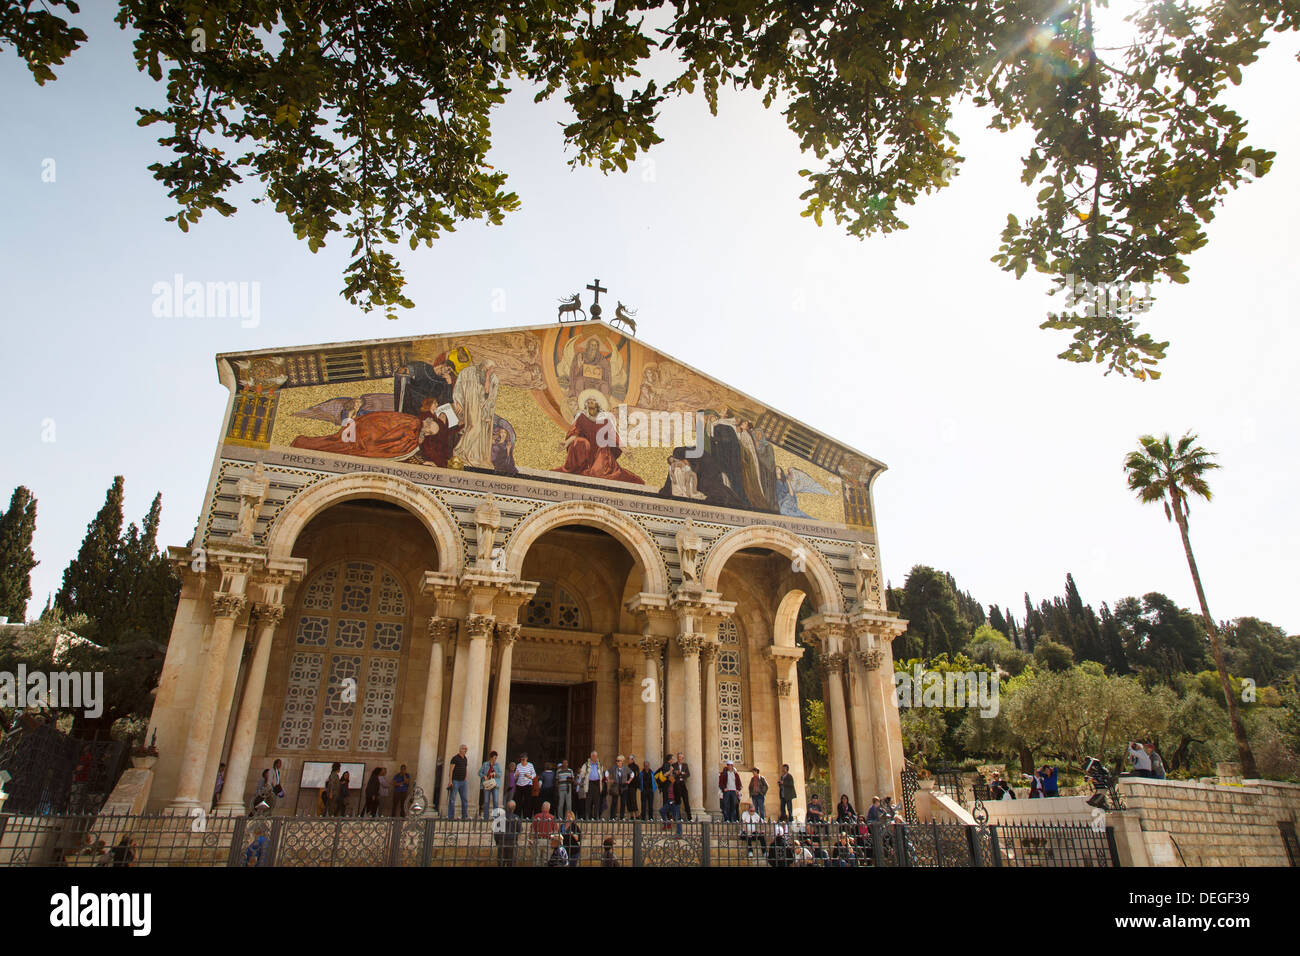 La basilique de l'Agonie (Eglise de toutes les nations) dans le jardin de Gethsémané, Jérusalem, Israël, Moyen Orient Banque D'Images